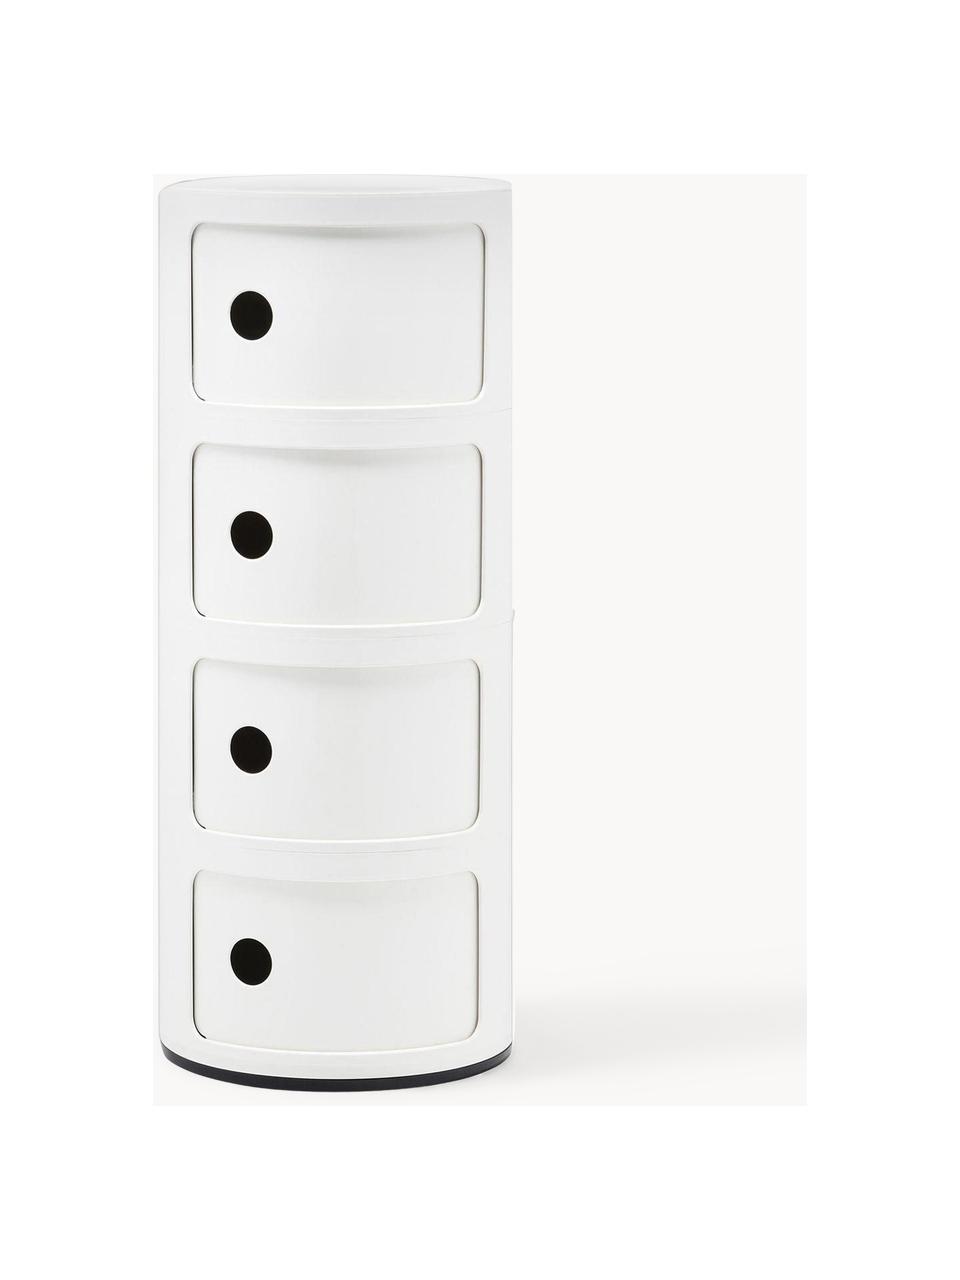 Contenitore di design con 4 cassetti Componibili, Plastica (ABS), laccata, certificata Greenguard, Bianco lucido, Ø 32 x Alt. 77 cm